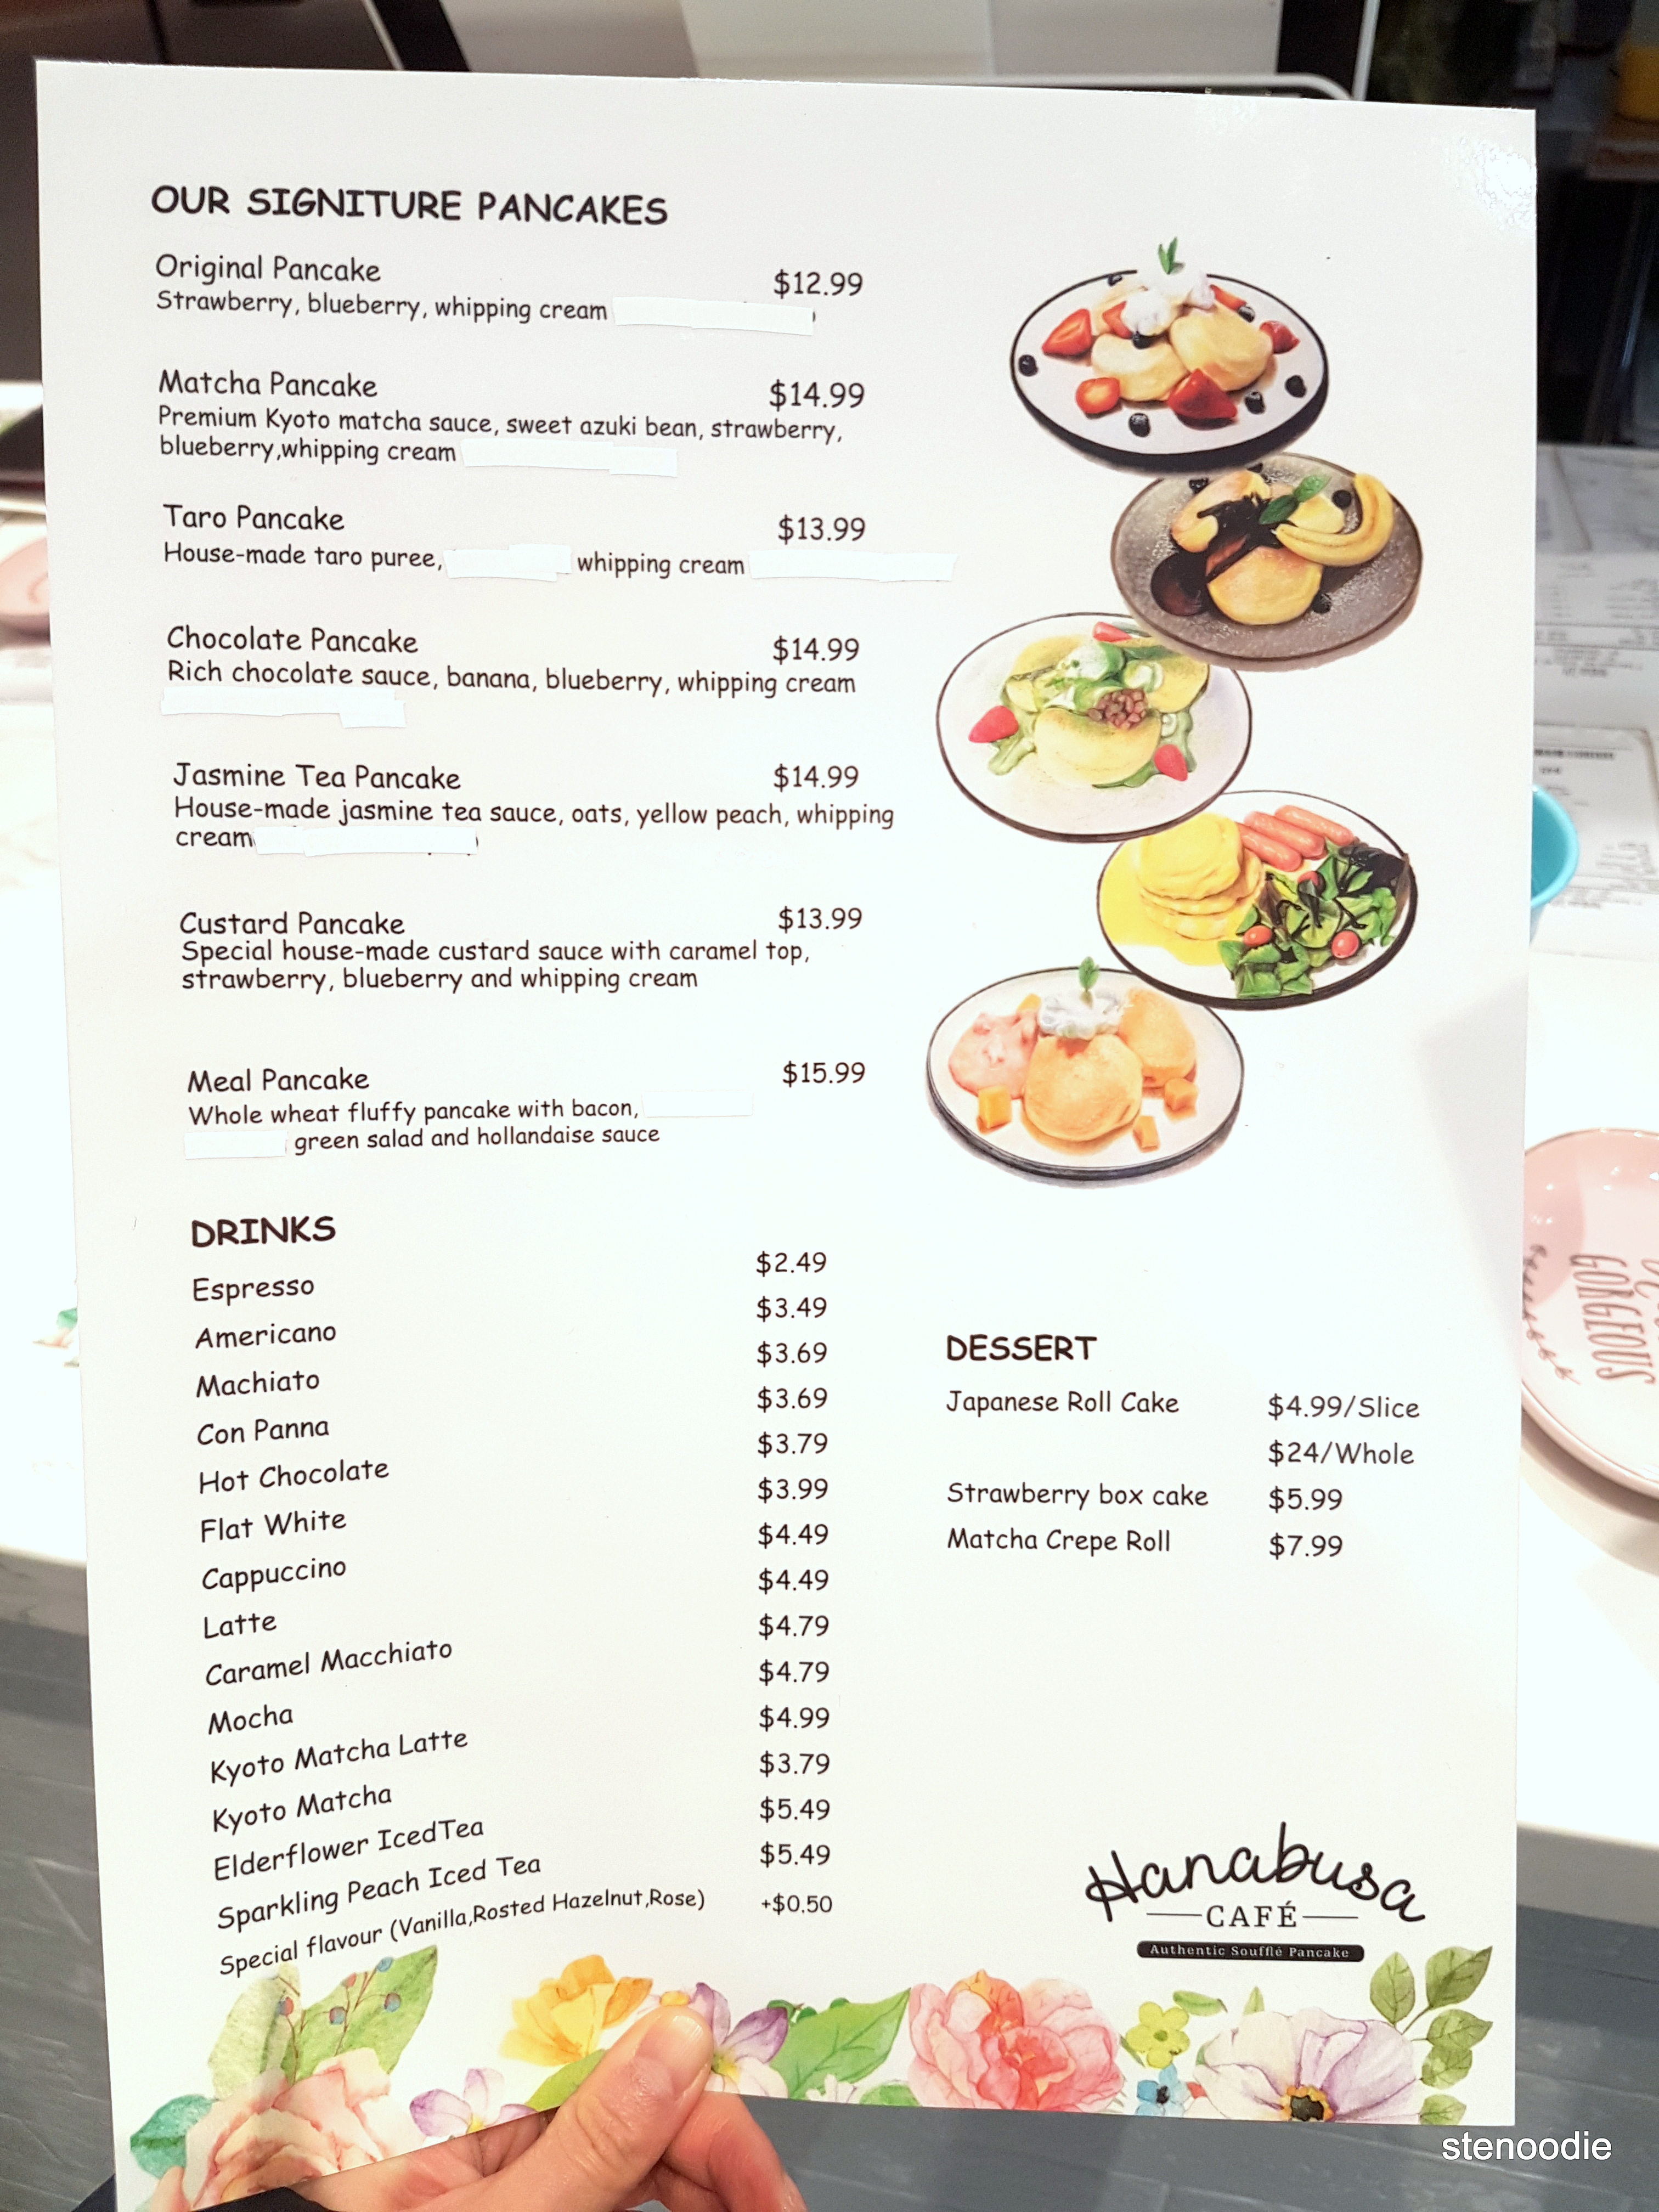 Hanabusa Café menu and prices